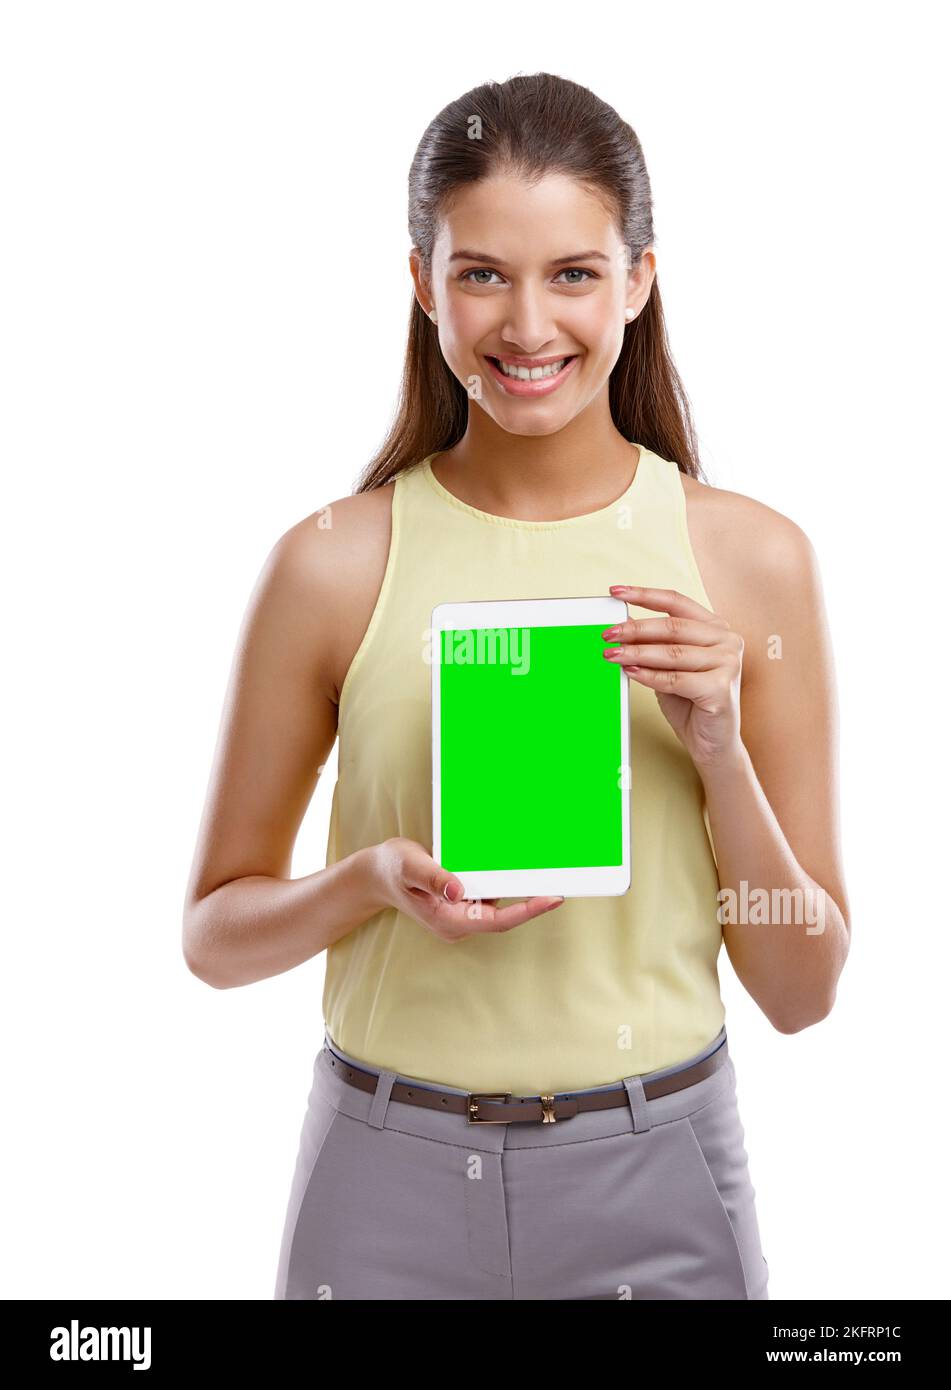 Seht es Euch an. Studioaufnahme einer schönen jungen Frau, die ein digitales Tablet mit einem Chroma-Key-Bildschirm vor einem weißen Hintergrund hochhält. Stockfoto